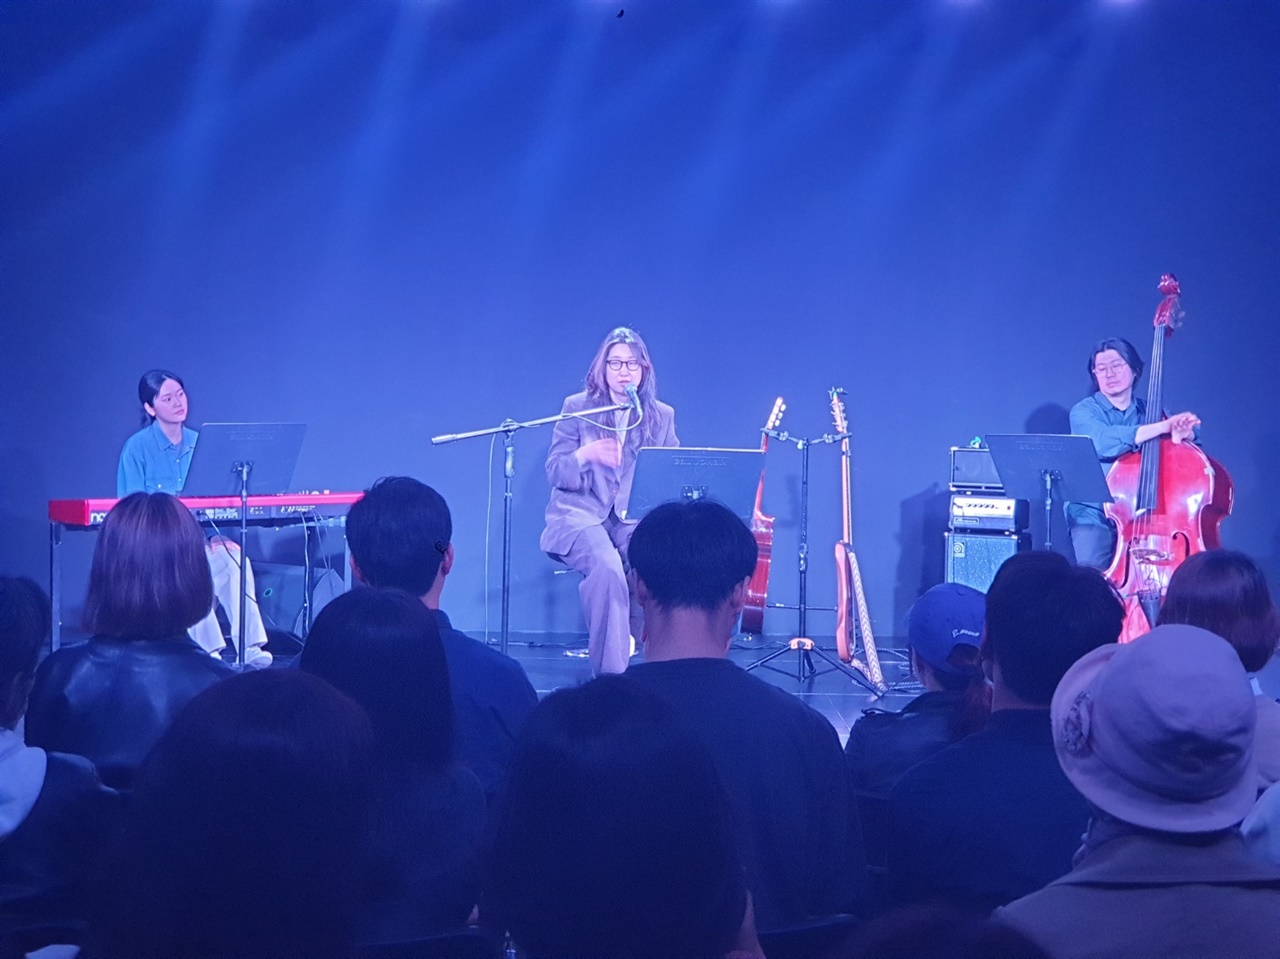 강아솔 서울시 시민청 <바스락콘서트>. 4월의 주인공으로 ‘그대에게’를 노래한 싱어송라이터 강아솔이 11일 오후 7시 공연을 가졌다.